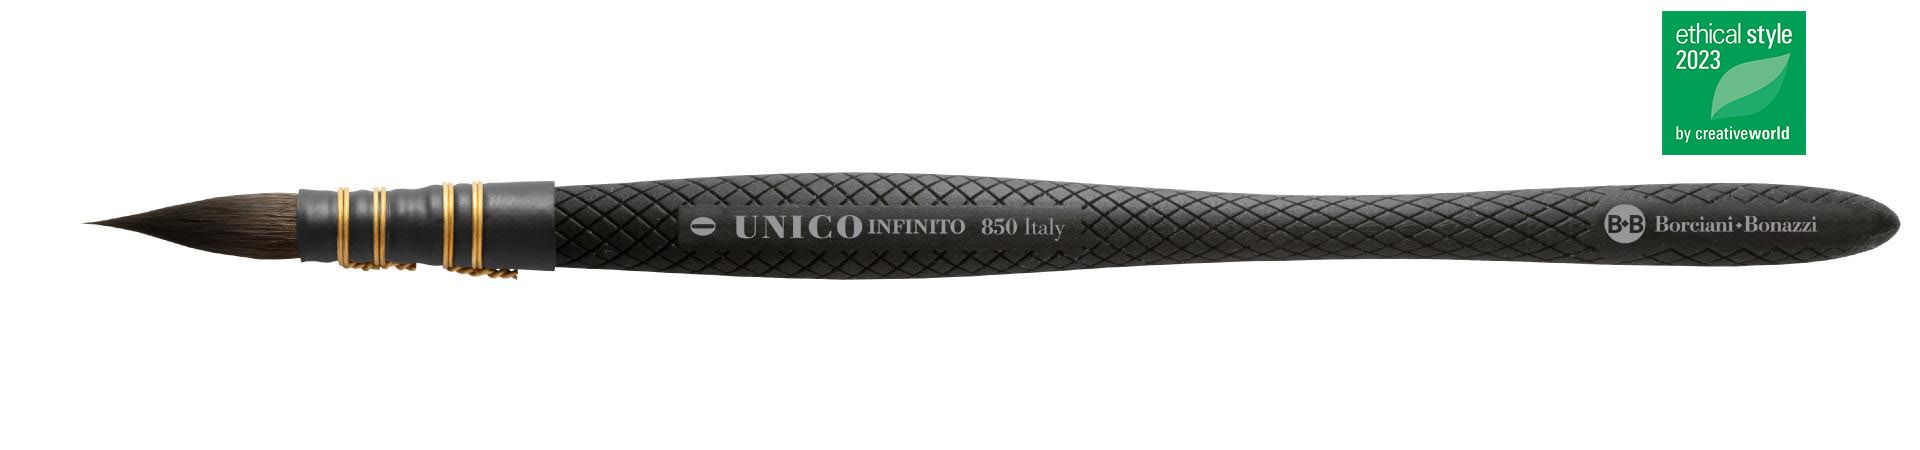 Serie 850 unico infinito pennello HIDRO - Dipingere con acquerello - Borciani e Bonazzi